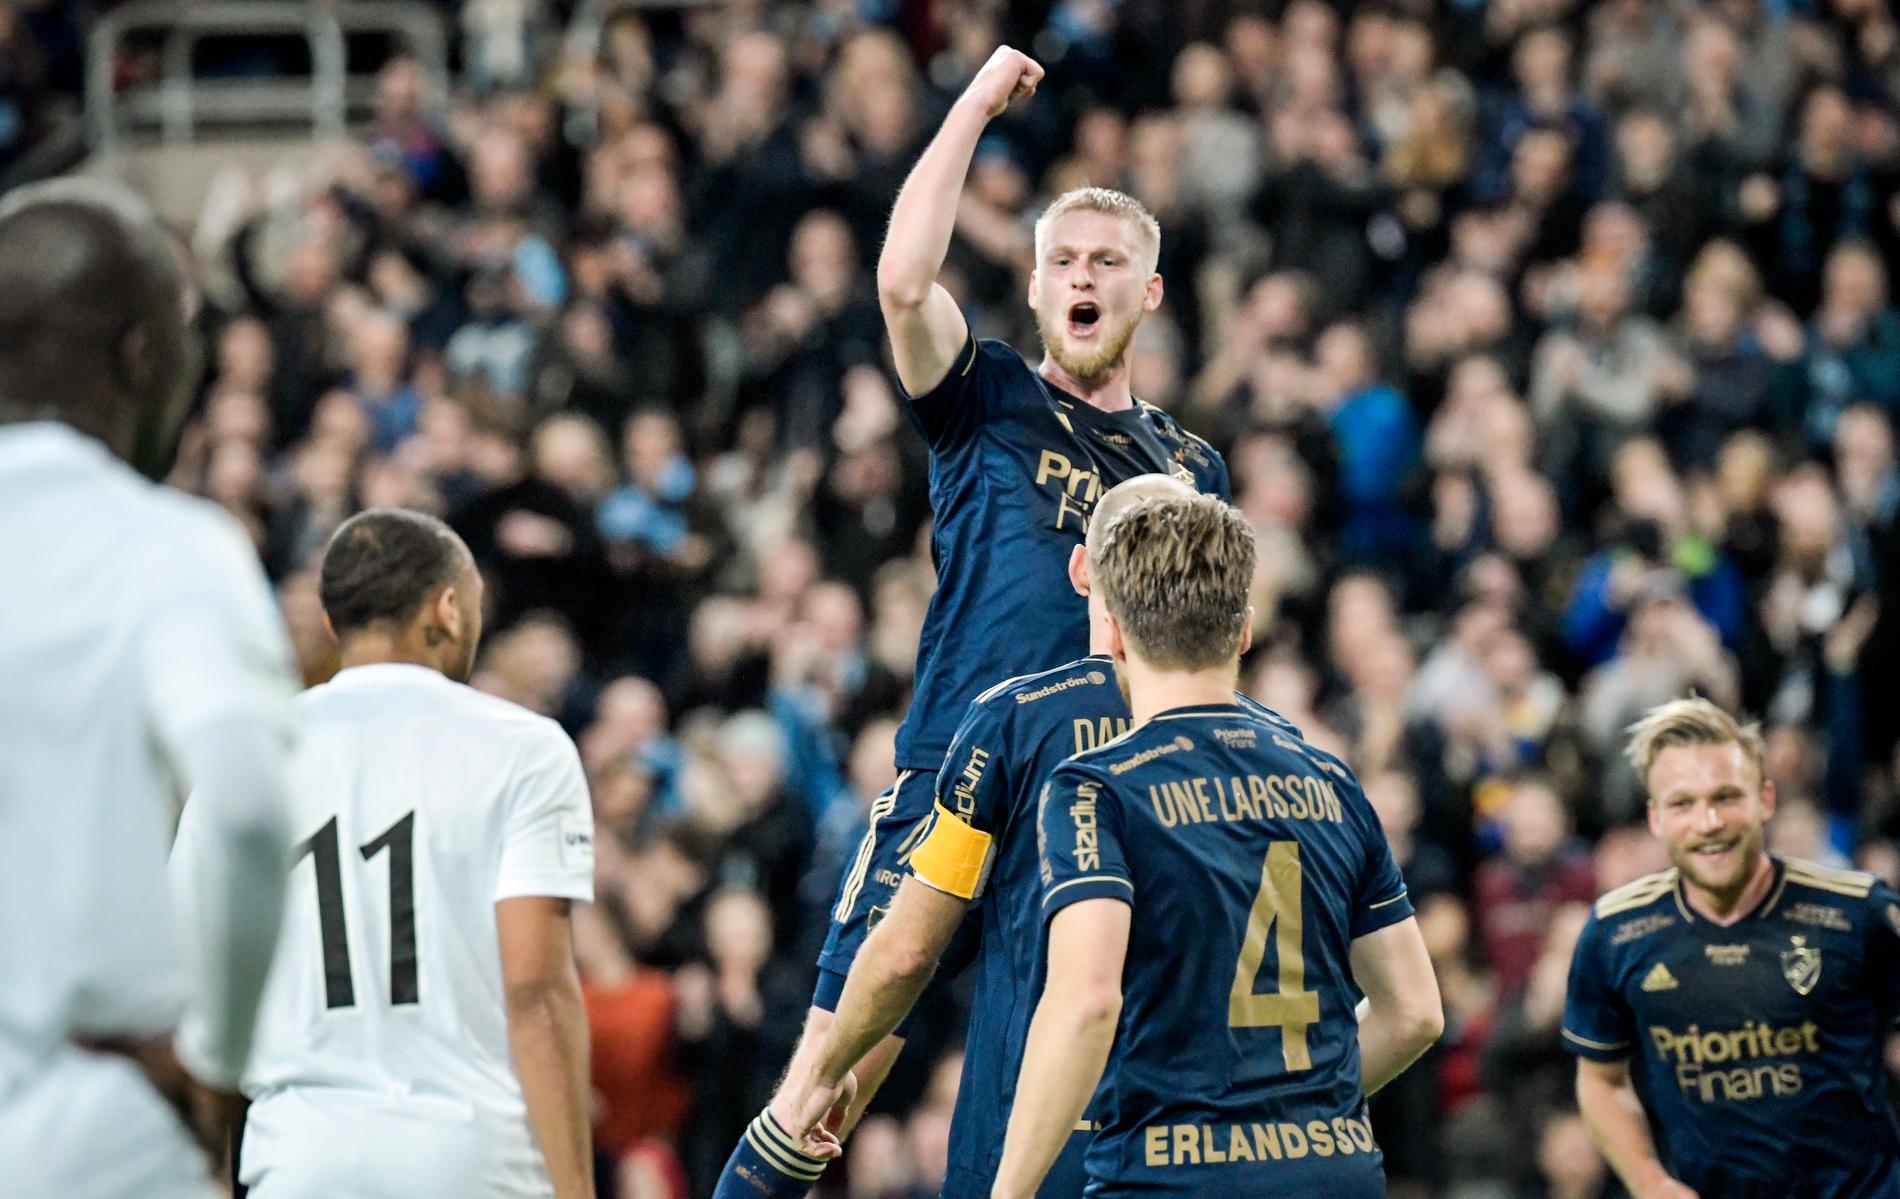 Anfallsstjärnan Kalle Holmberg har lämnat IFK Norrköping för mästarlaget Djurgården. Här firar han ett mål i cupmatchen mot Dalkurd i februari. Arkivbild.